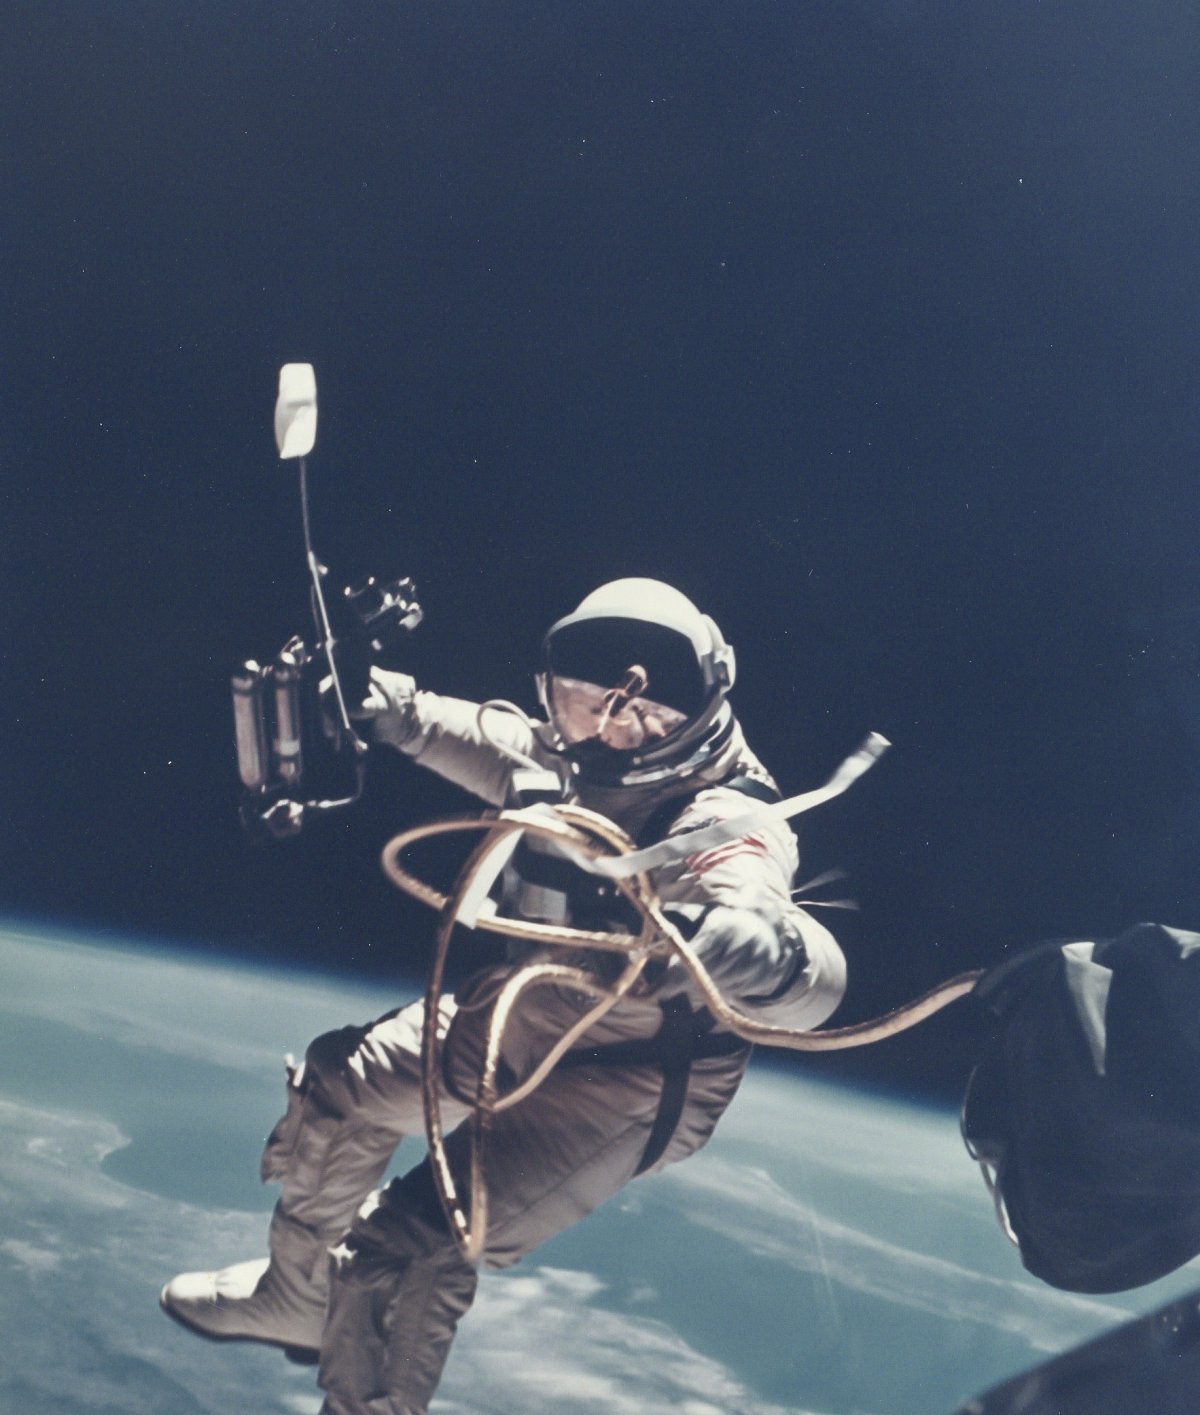 1965 оны зургадугаар сарын 3. Эд Уайт анх задгай сансарт ажилласан Америкийн нисгэгч. Харин үүнээс гурван сарын өмнө ЗХУ-ын сансрын нисгэгч Алексей Леонов хөлгөөсөө гарч, задгай сансарт ажилласан анхны хүн болж байжээ.